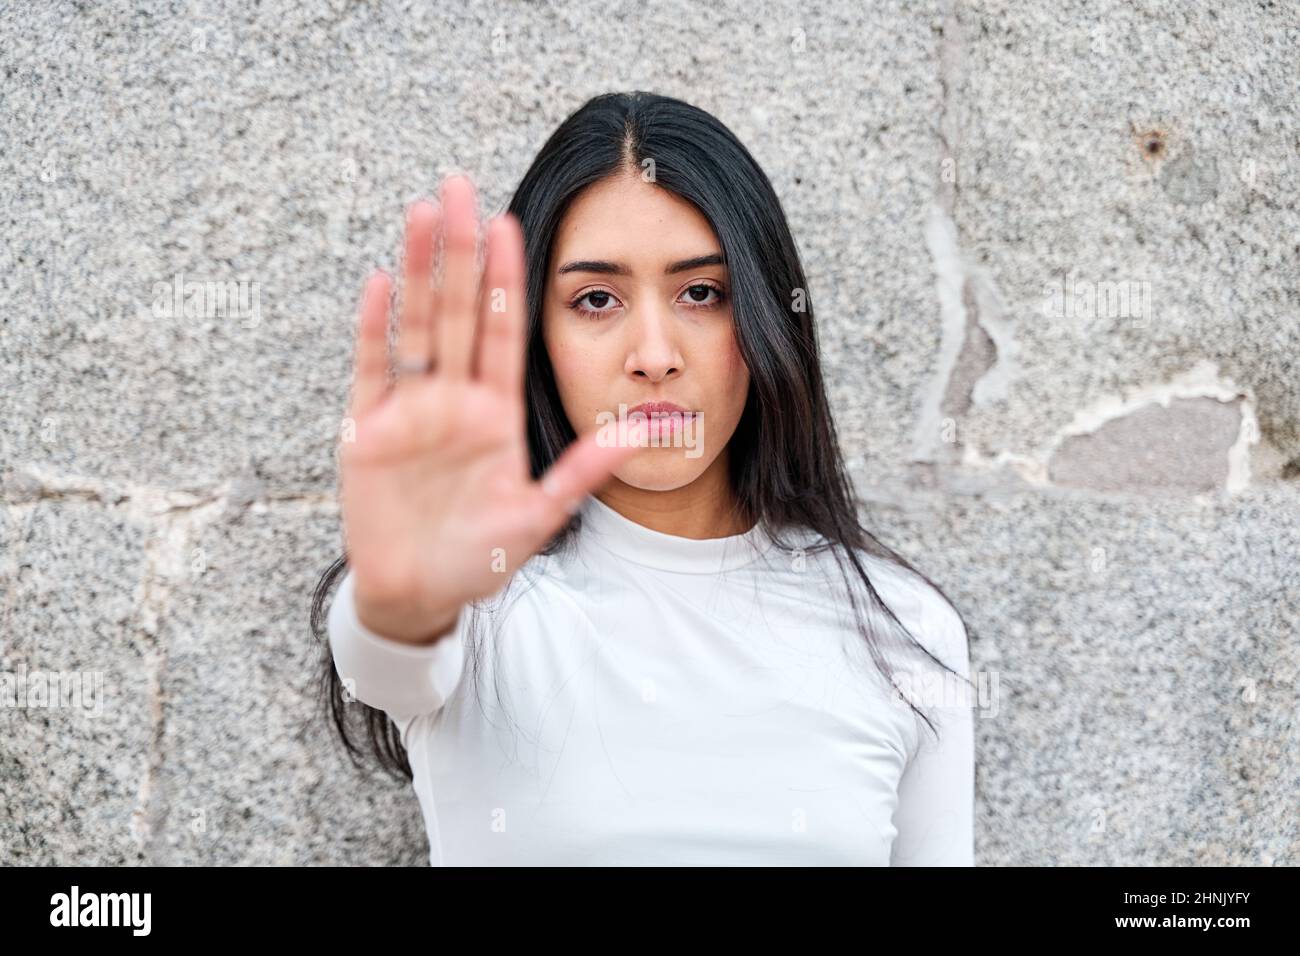 Ich sage genug. Porträt einer verzweifelten lateinischen Frau, die eine Stop-Geste zu allen Erscheinungsformen von Diskriminierung aufgrund des Geschlechts zeigt. Starke hispanische Lady Look Stockfoto